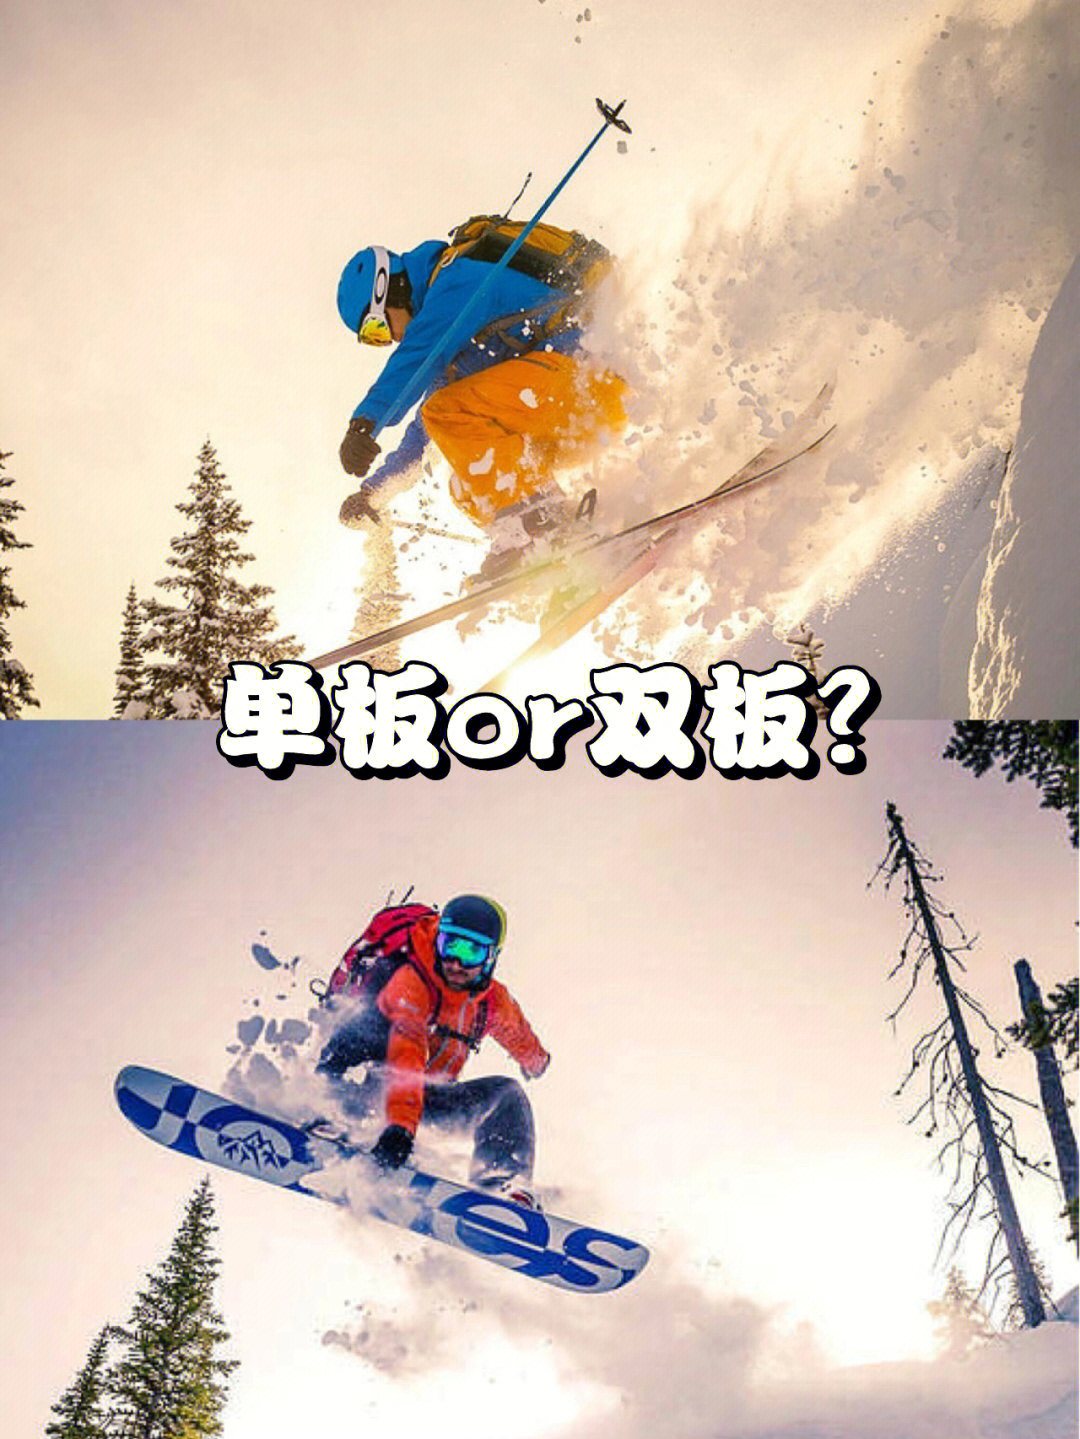 雪季倒计时新手滑雪单板or双板